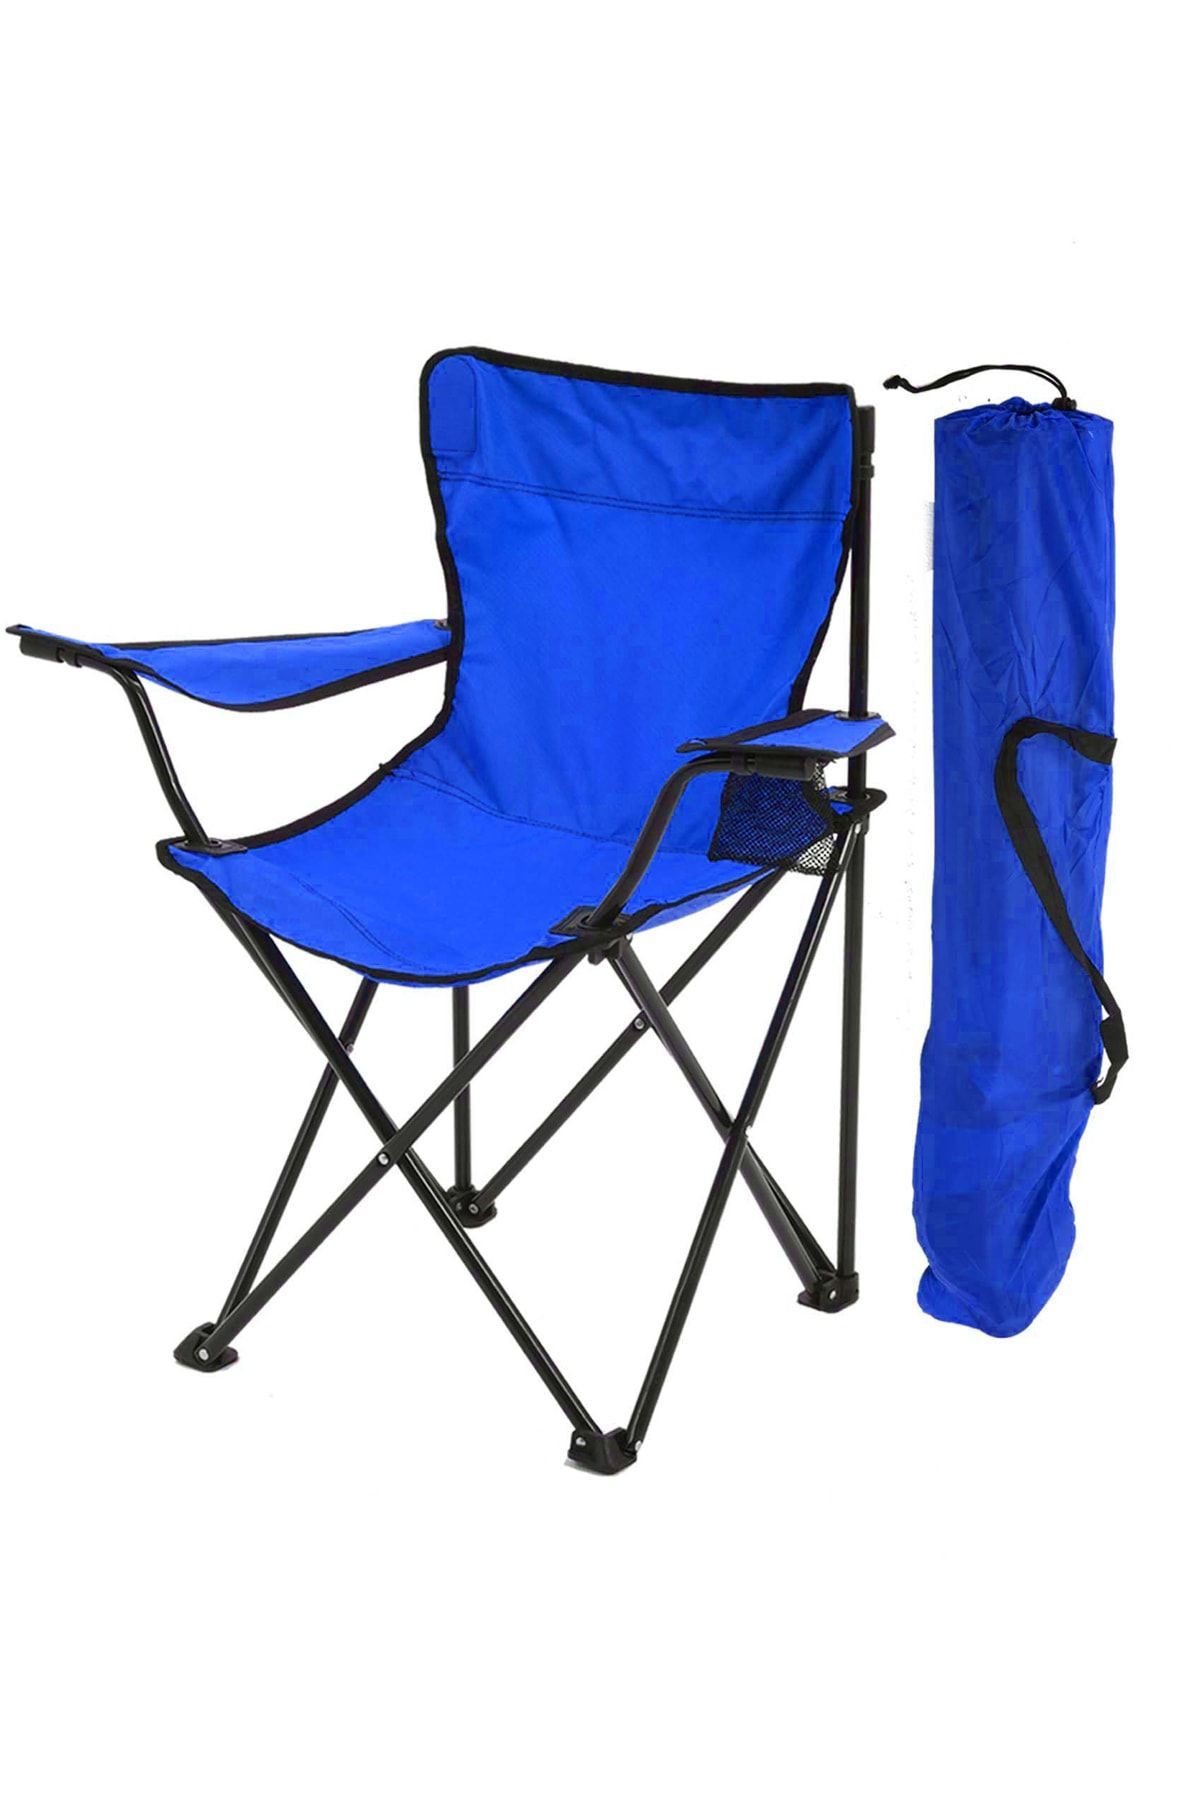 Exent Parlak Mavi Kamp Sandalyesi Rejisör Katlanır Çantalı Piknik, Plaj, Balıkçı Sandalyesi-mavi